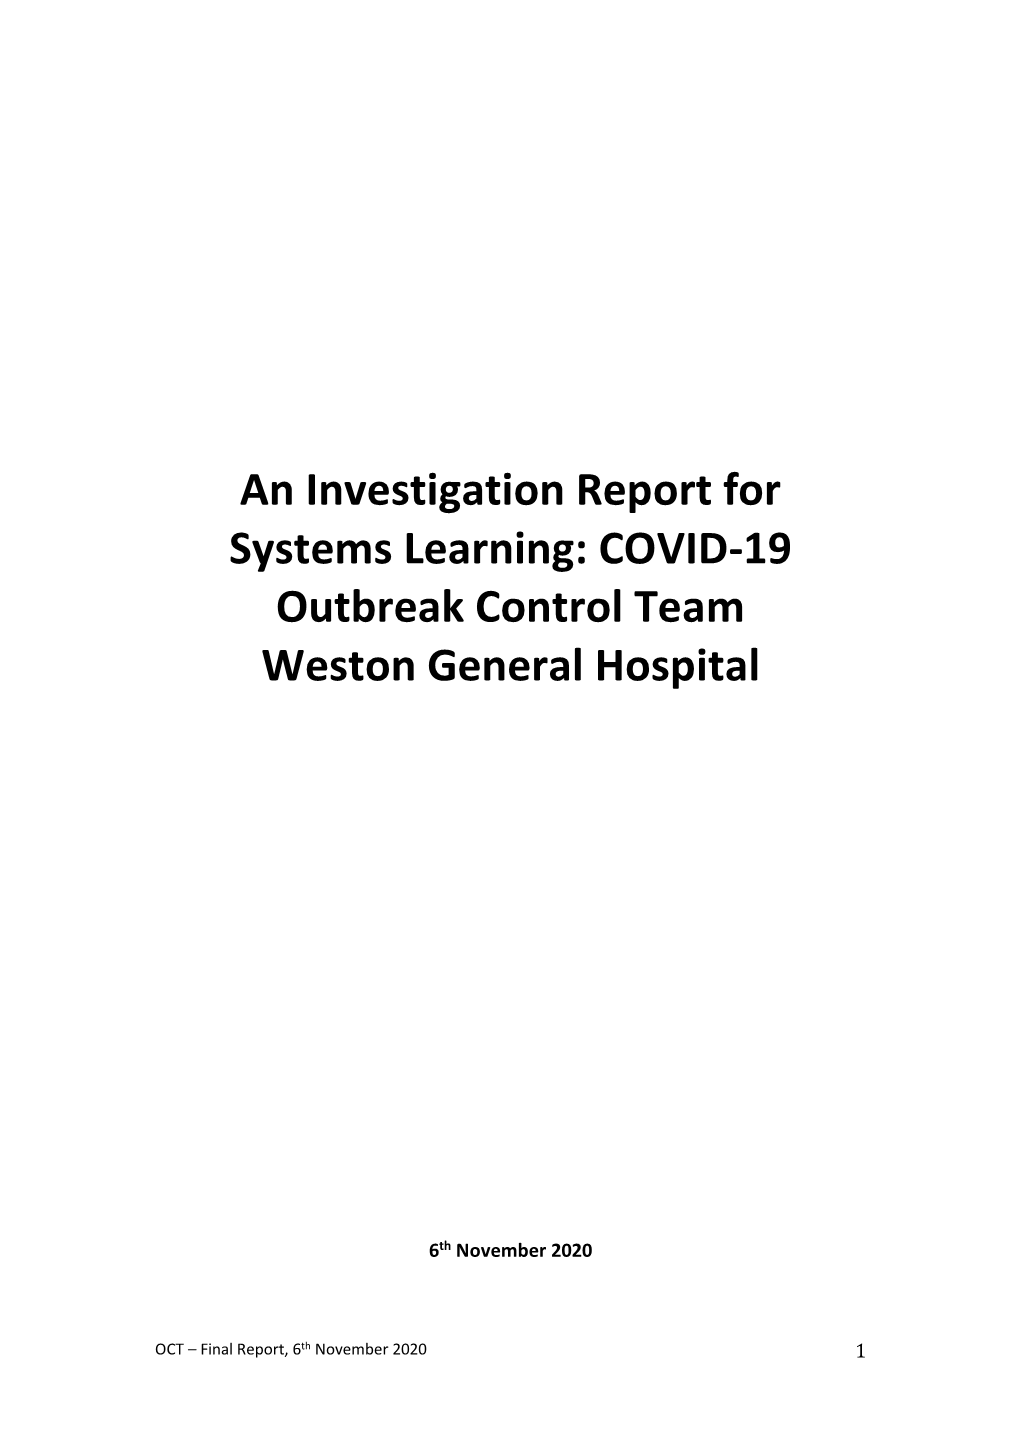 COVID-19 Outbreak Control Team Weston General Hospital